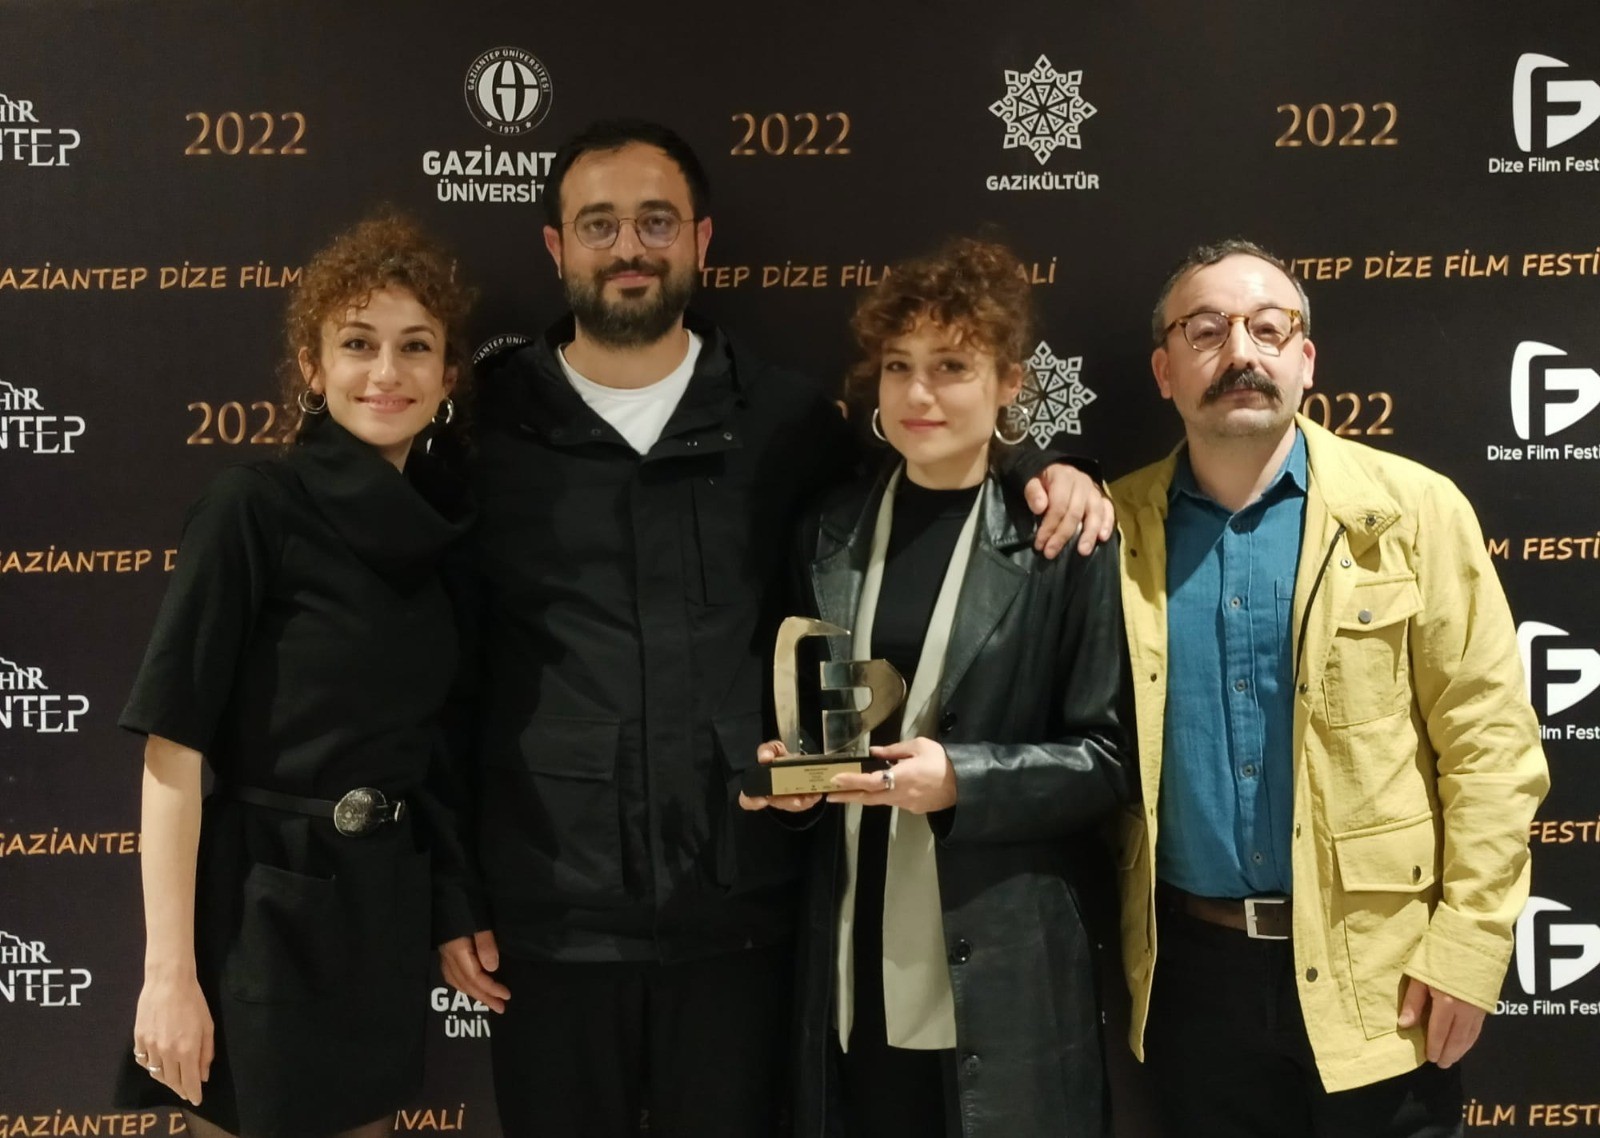 HKÜ’ye Dize Film Festivali’nden ödül